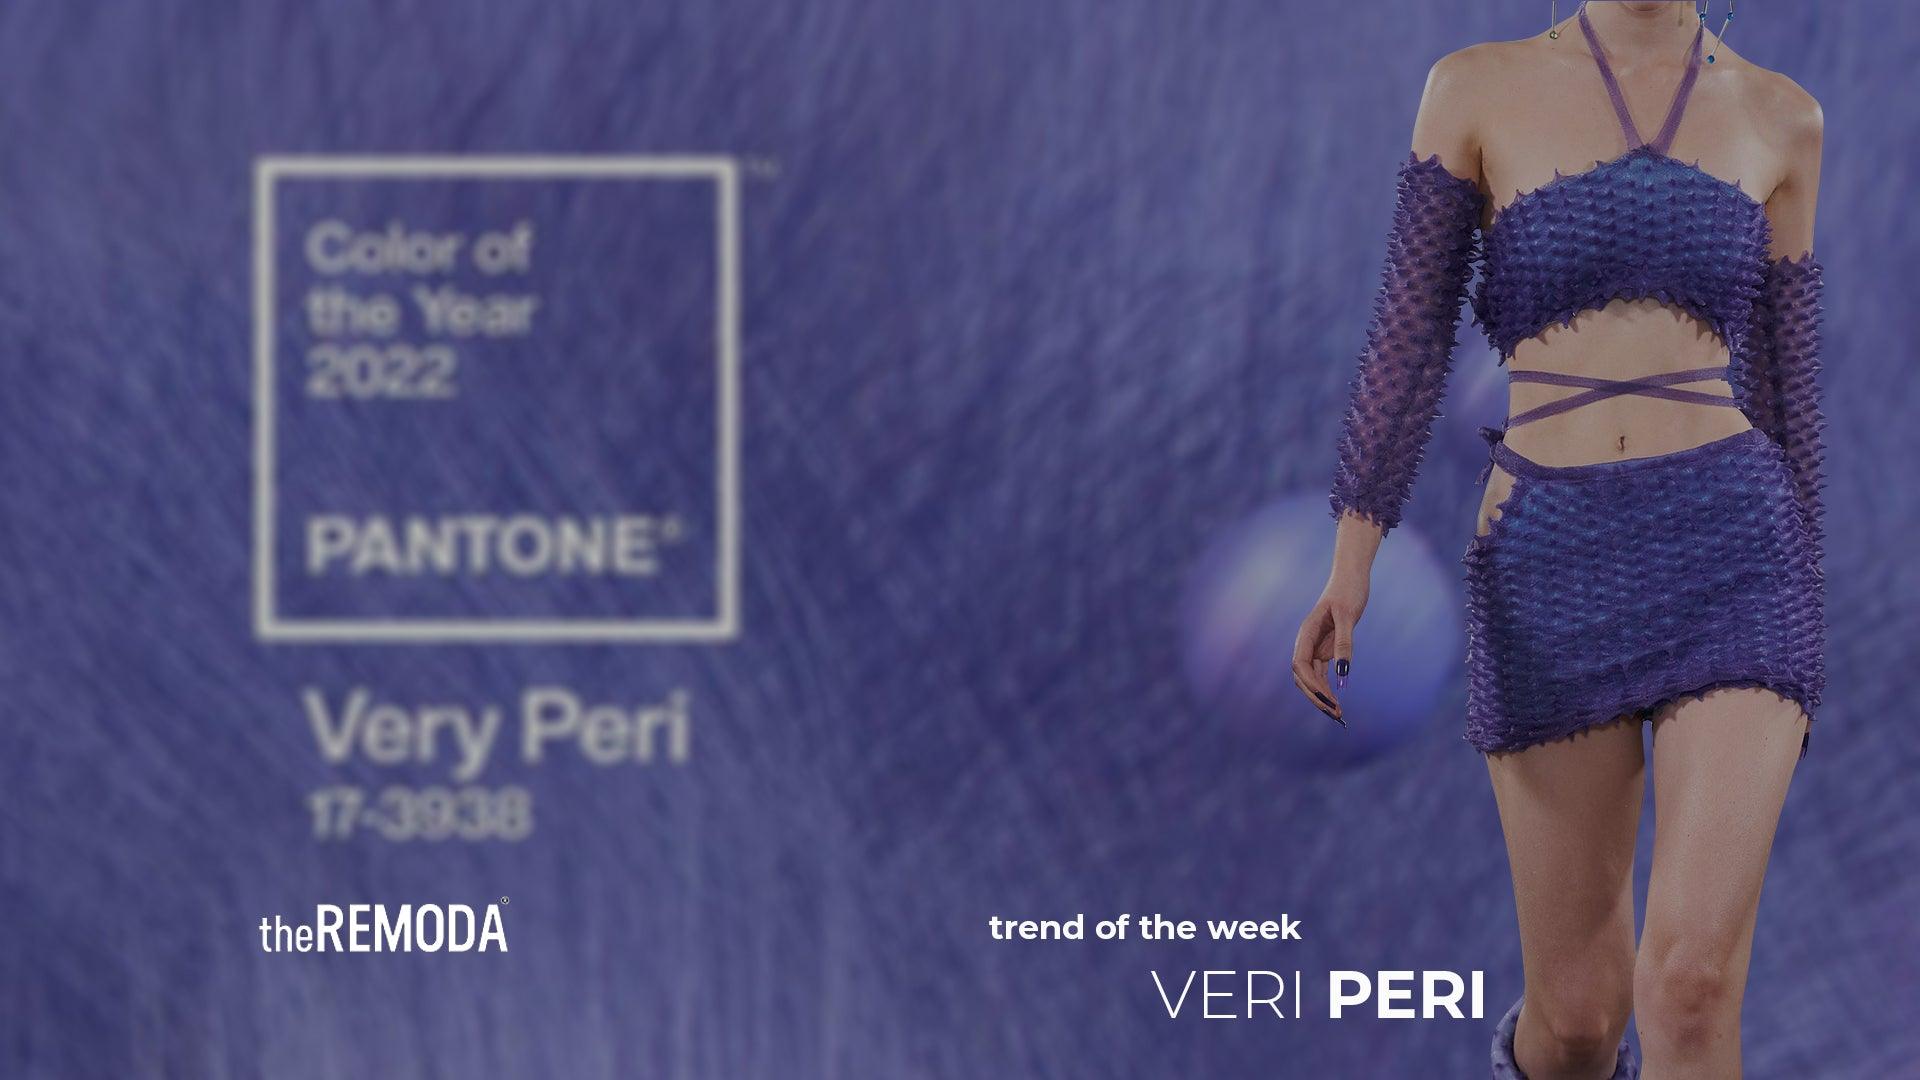 Meet new trend of the week — Veri Peri - theREMODA